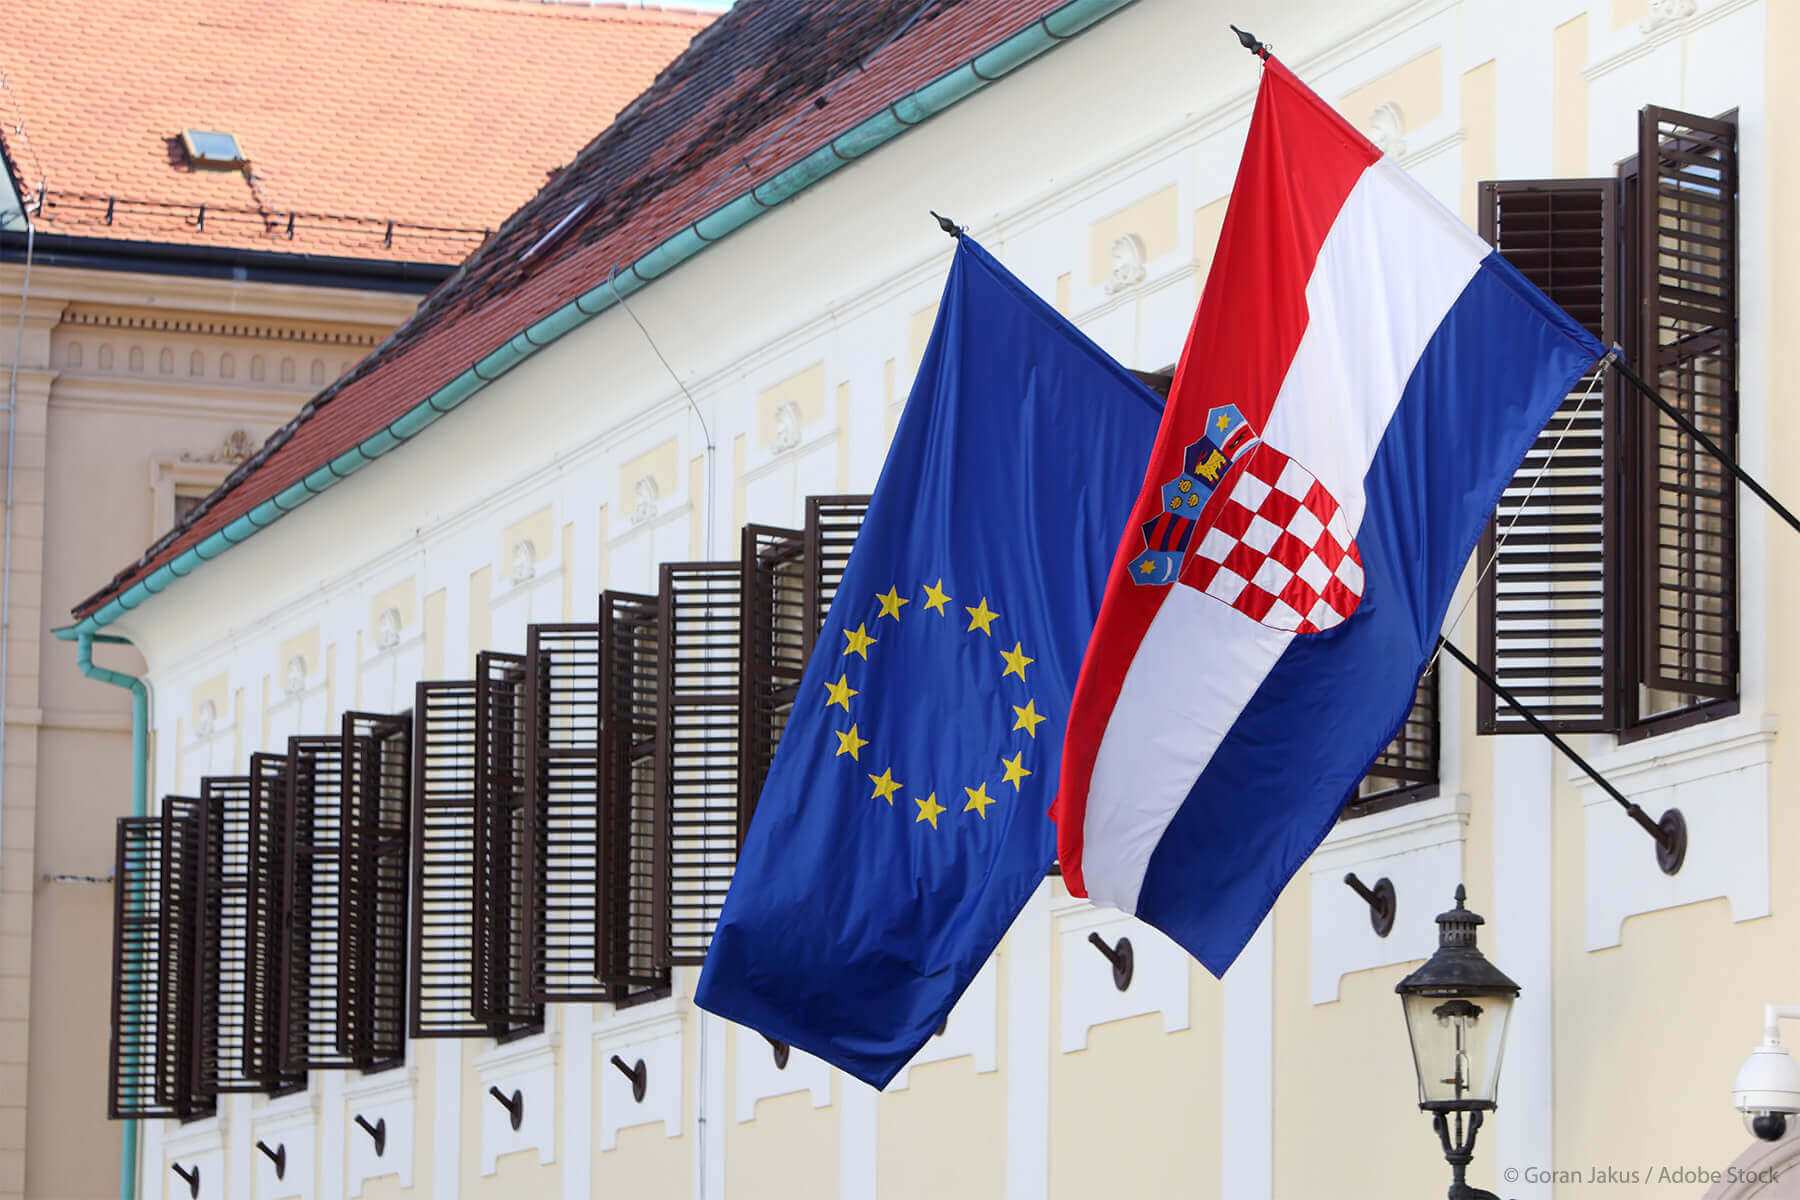 Croatia Joins Borderless Schengen Zone, Adopts Euro